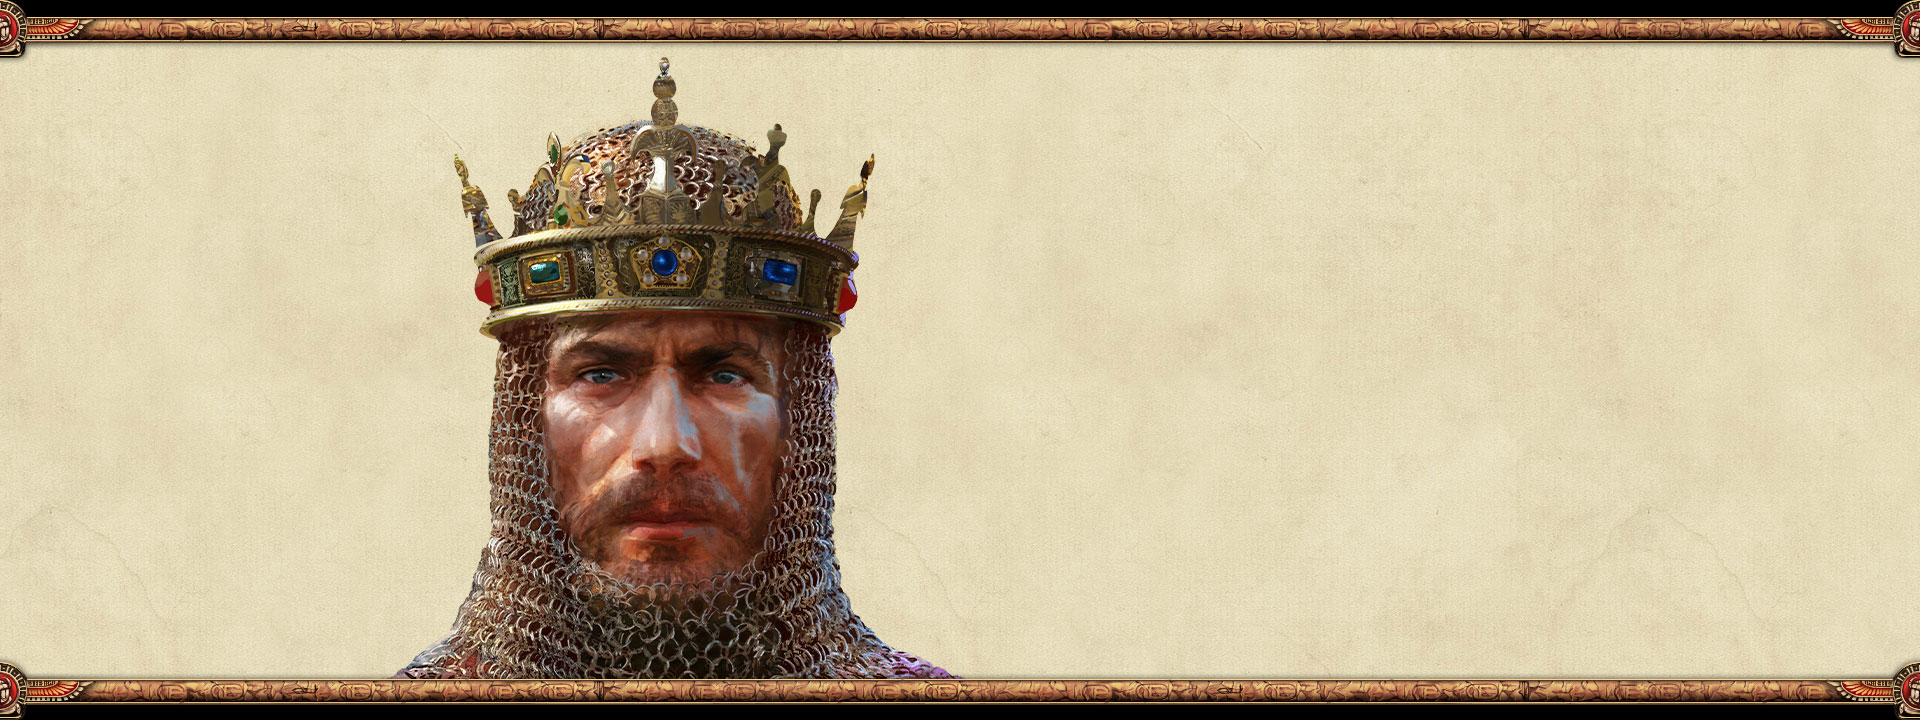 Правитель империи в кольчуге и короне